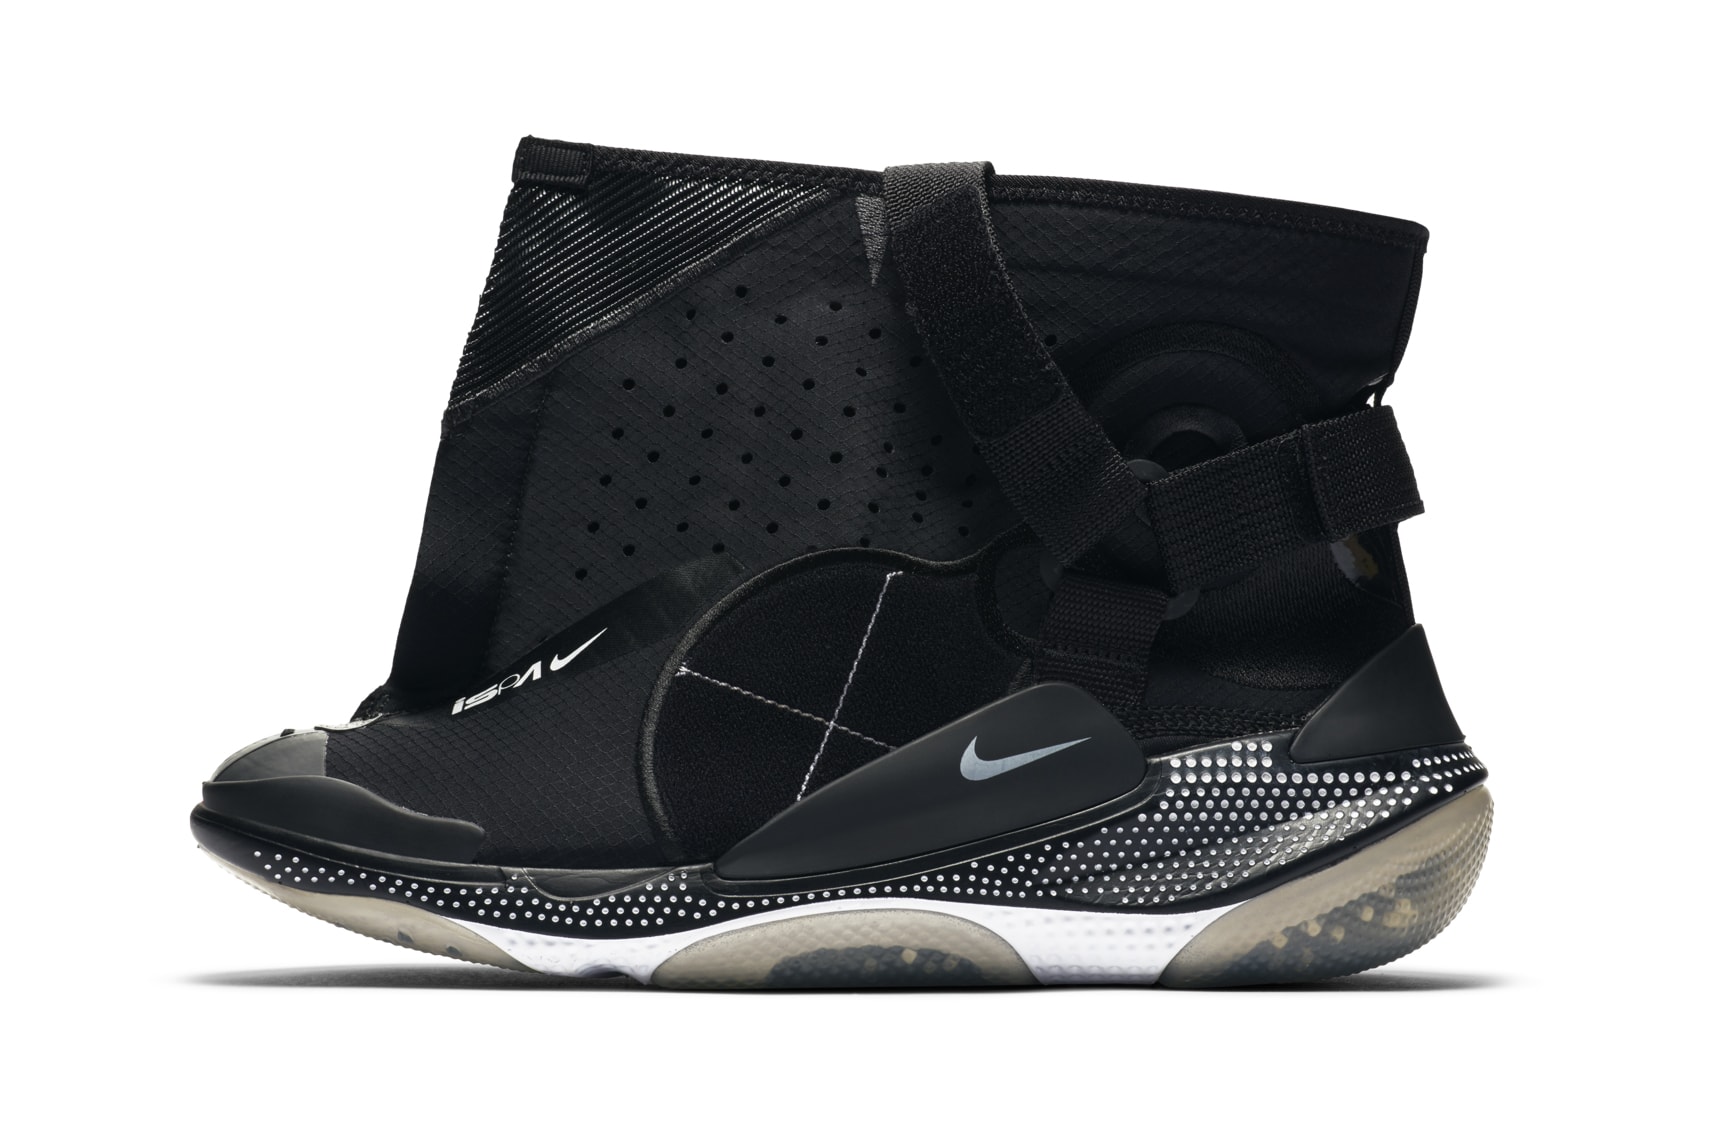 Nike ISPA Joyride Envelope release information black blue sneakers footwear 